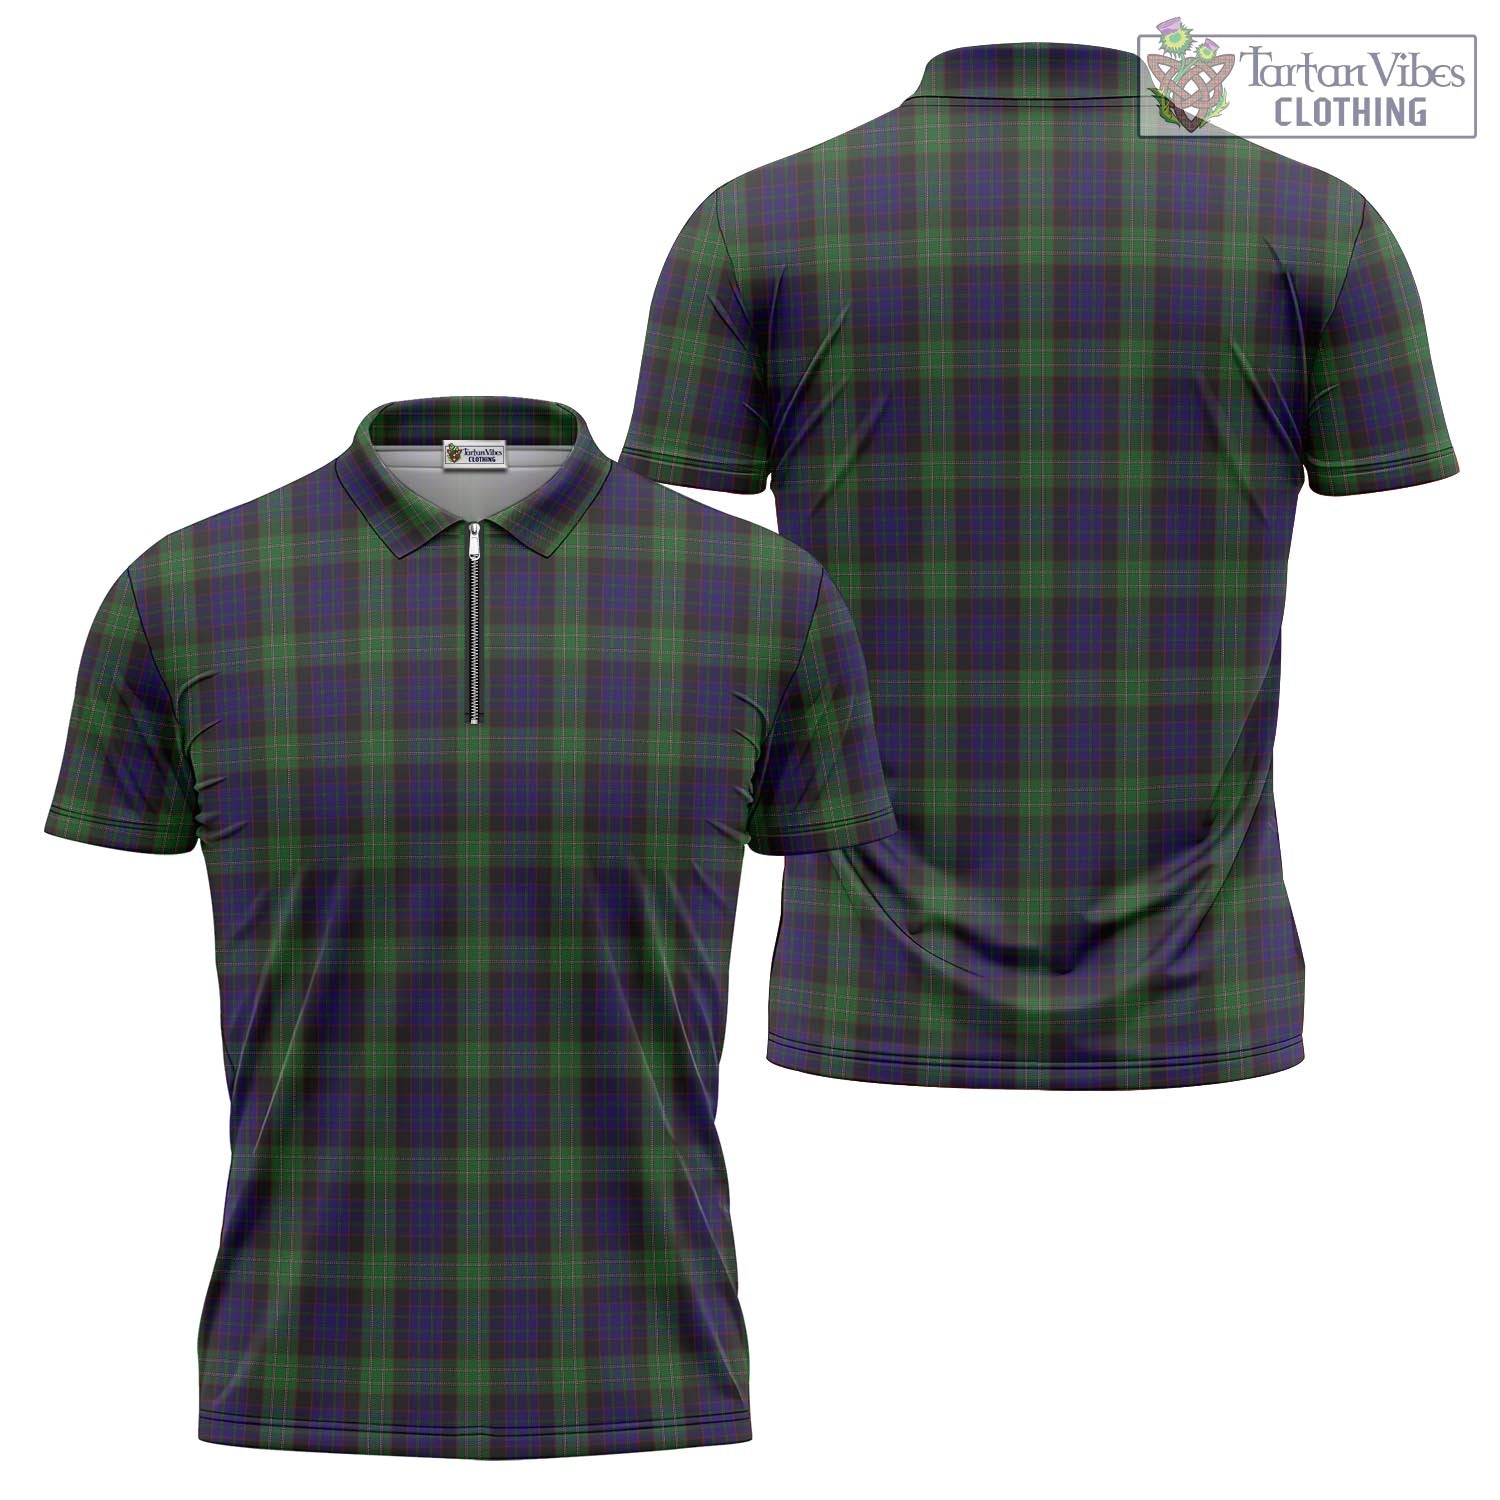 Tartan Vibes Clothing Nicolson Green Hunting Tartan Zipper Polo Shirt